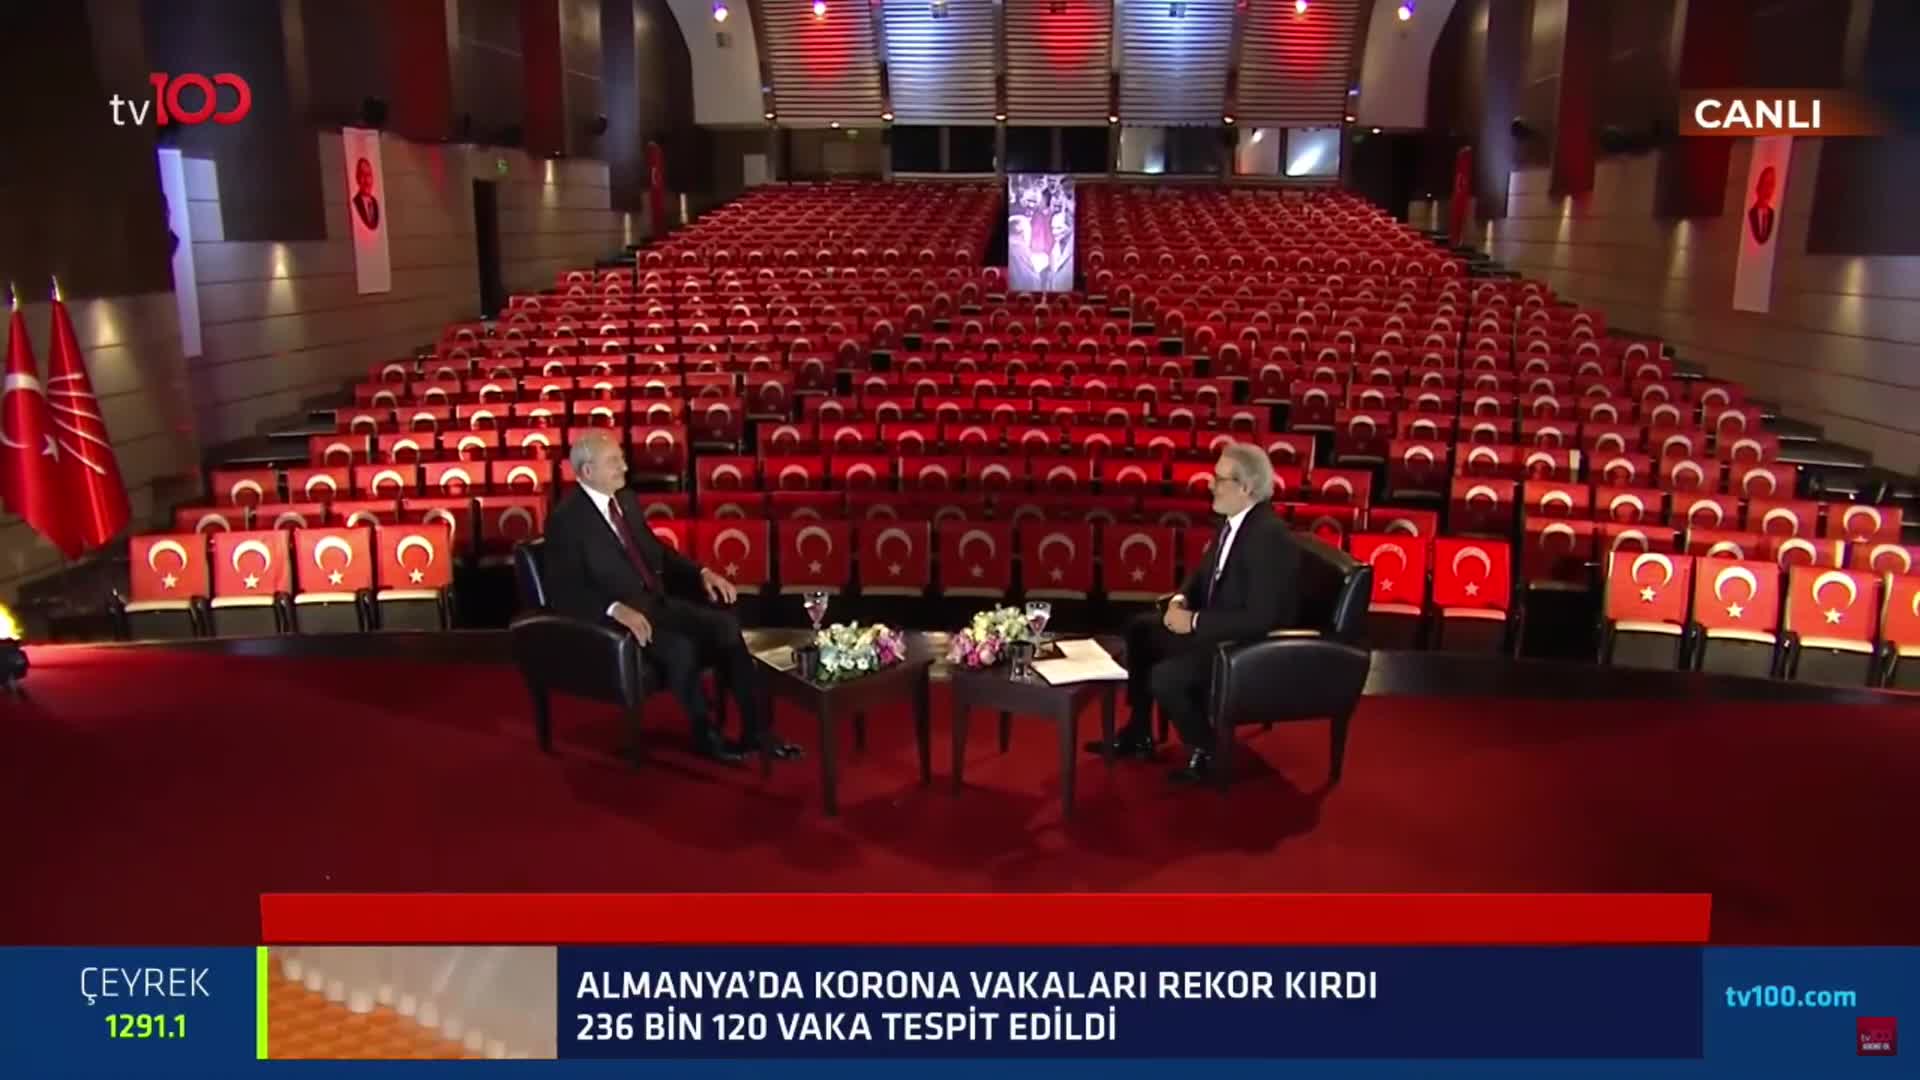 KIılıçdaroğlu: Erdoğan, Bahçeli'yi "Seçim barajı"ndan teslim aldı